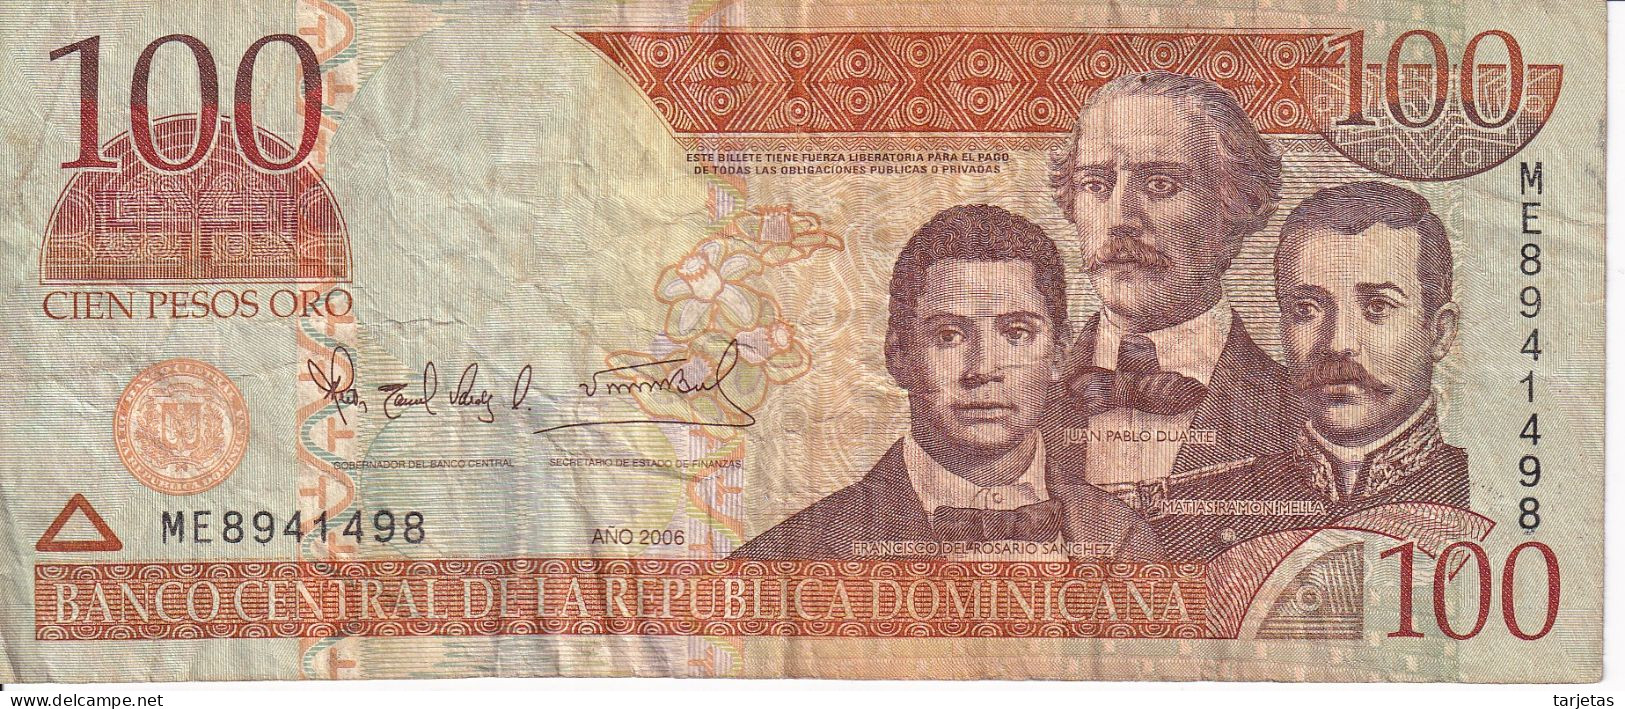 ¡CAPICUA! BILLETE DE REP. DOMINICANA DE 100 PESOS ORO DEL AÑO 2006 Nº 8941498 (BANKNOTE) - Dominicaine